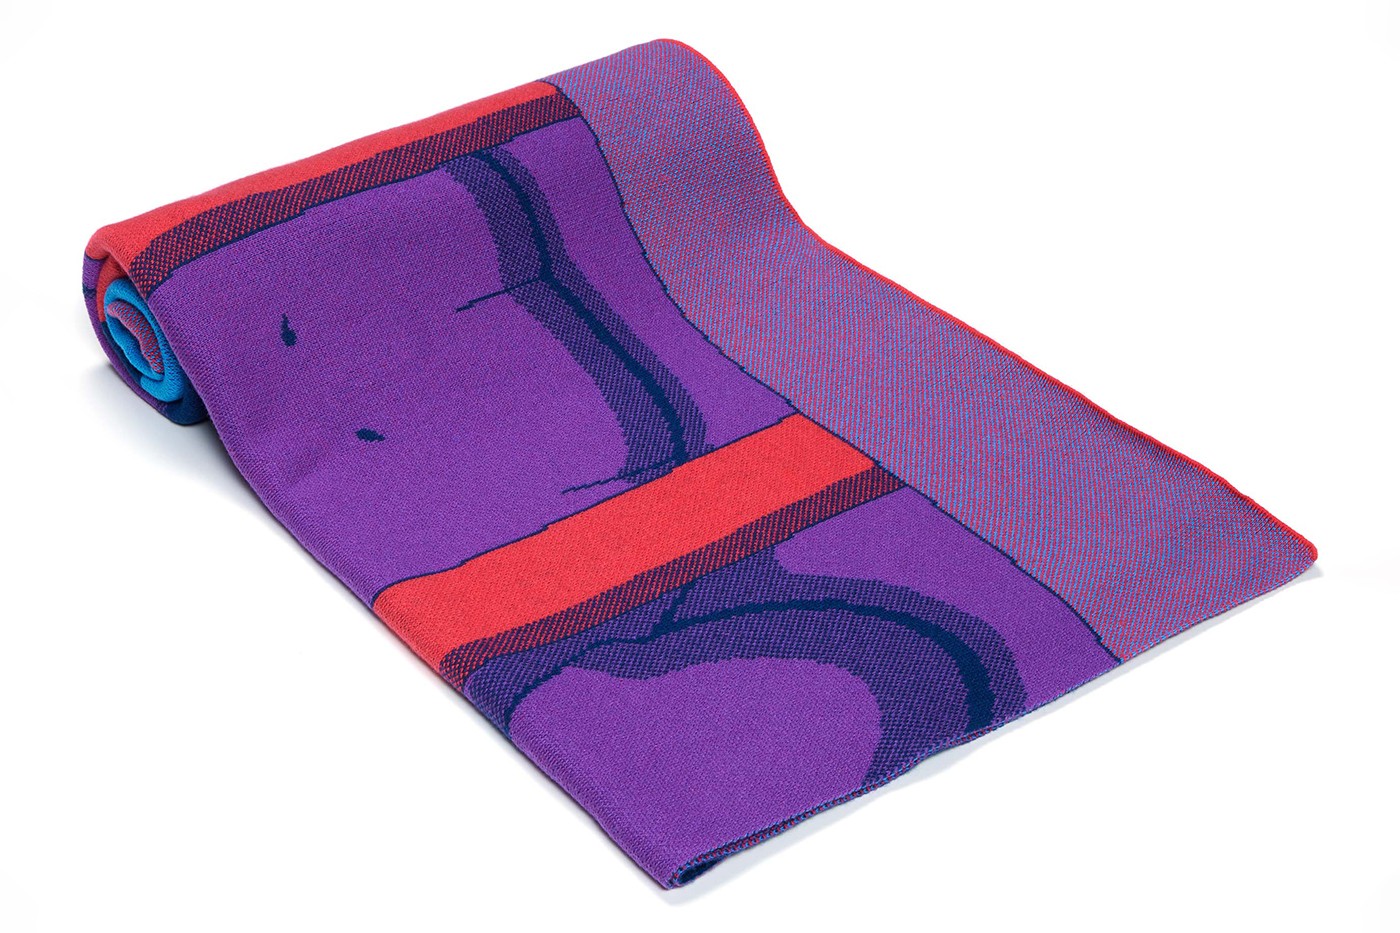 Kaws представил лимитированную коллекцию кашемировых одеял (фото 3)